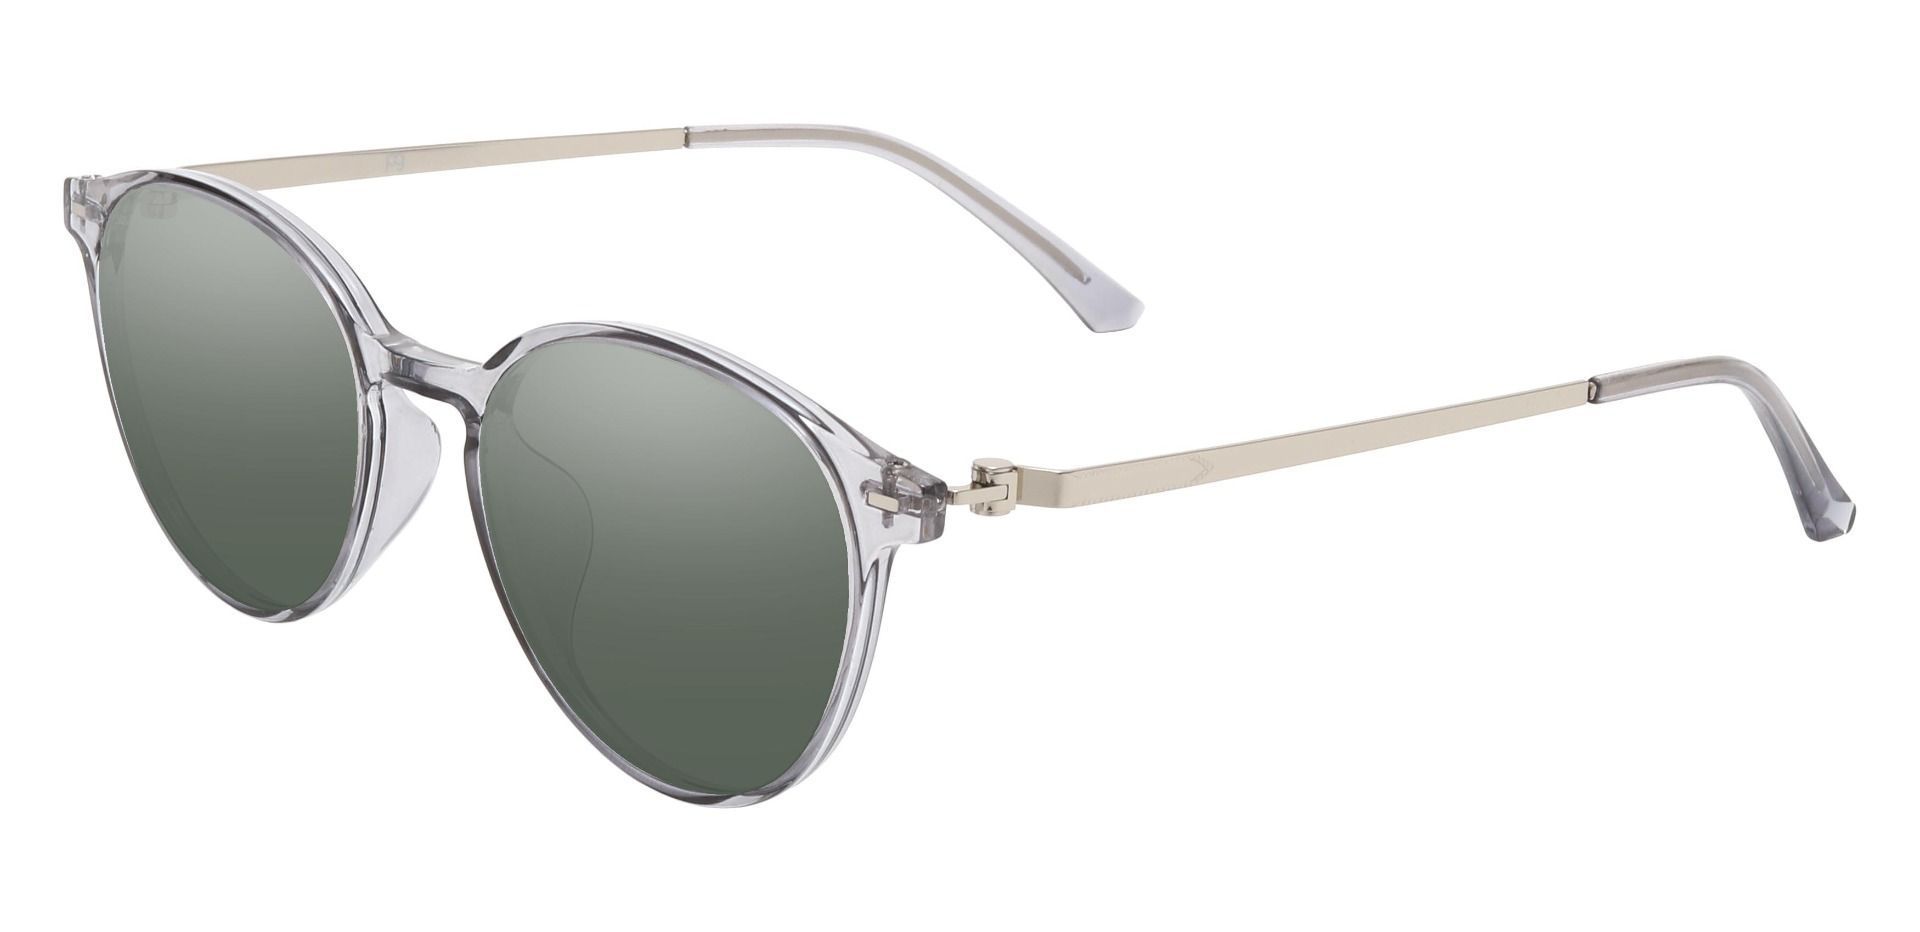 Springer Round Prescription Sunglasses - Gray Frame With Green Lenses